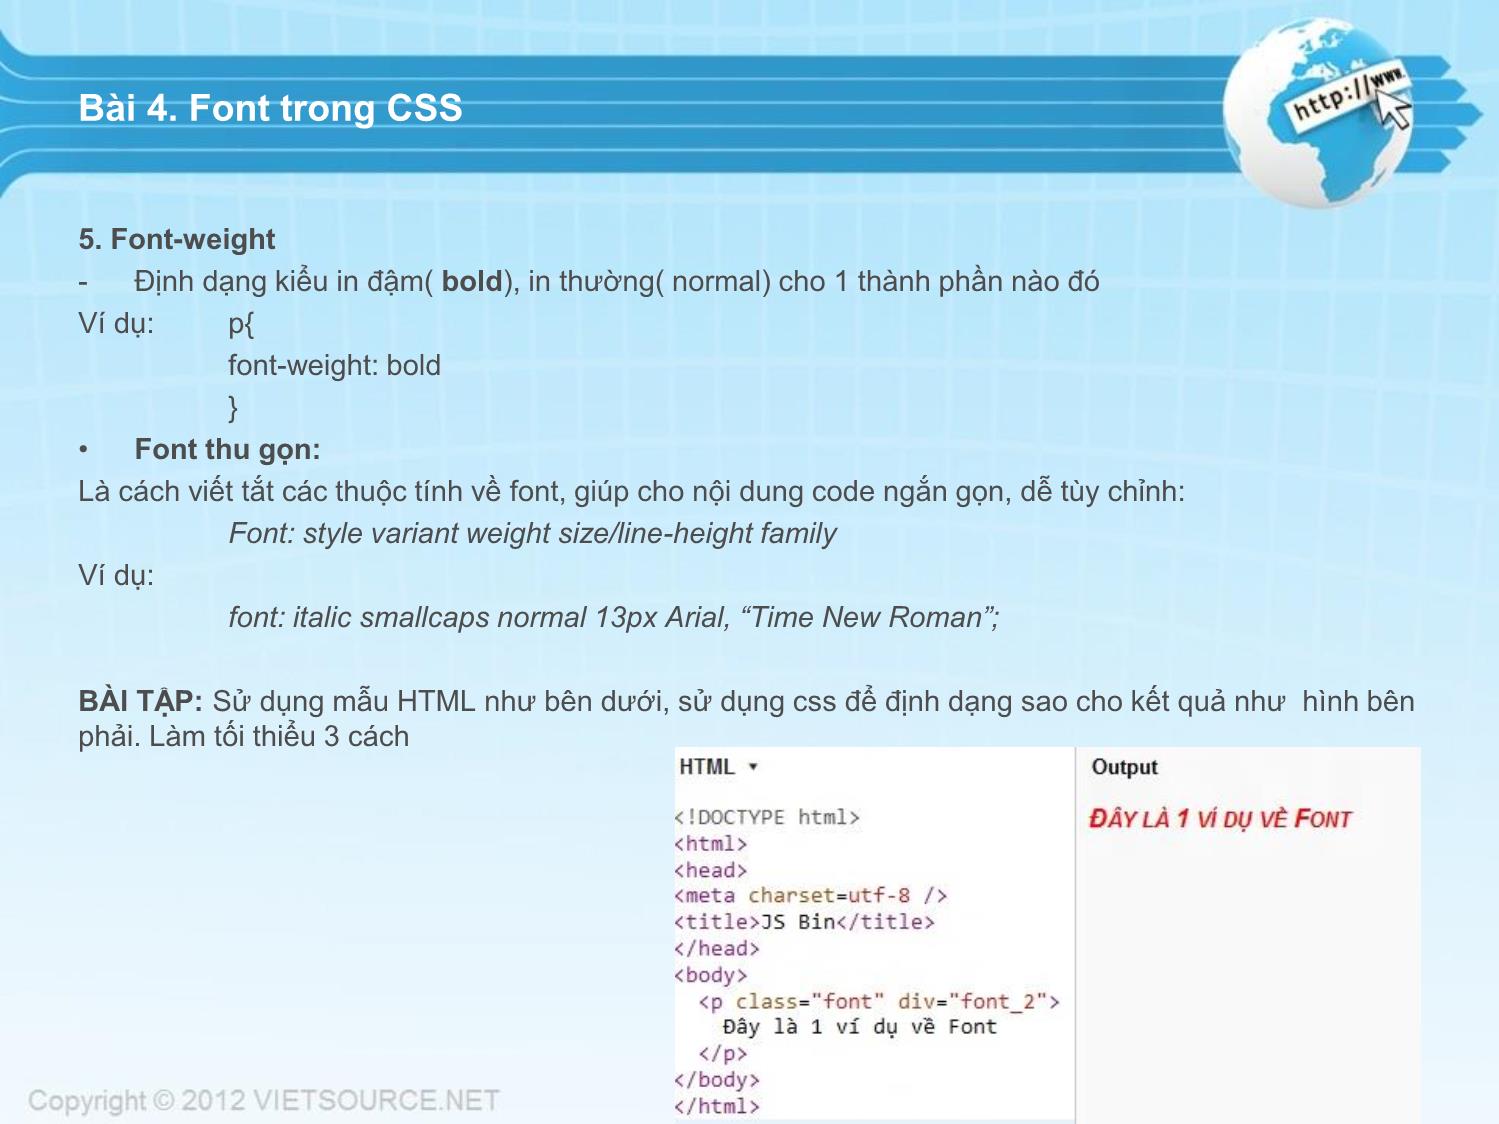 Bài giảng CSS - Bài 4: Font trong CSS trang 2